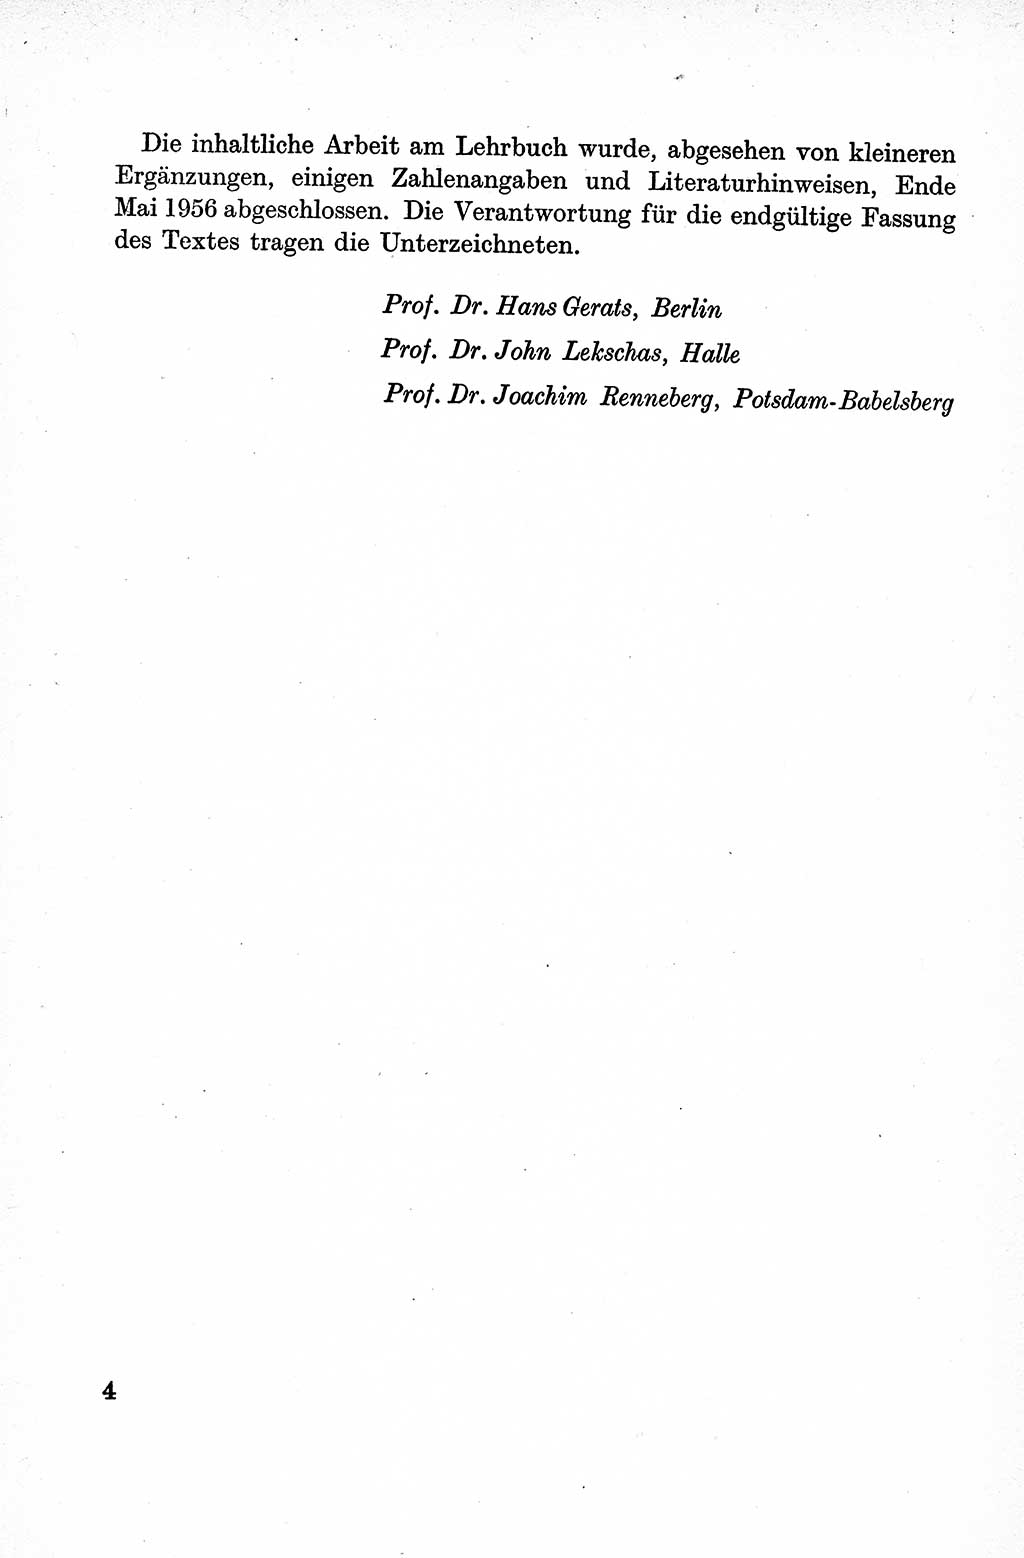 Lehrbuch des Strafrechts der Deutschen Demokratischen Republik (DDR), Allgemeiner Teil 1959, Seite 4 (Lb. Strafr. DDR AT 1959, S. 4)